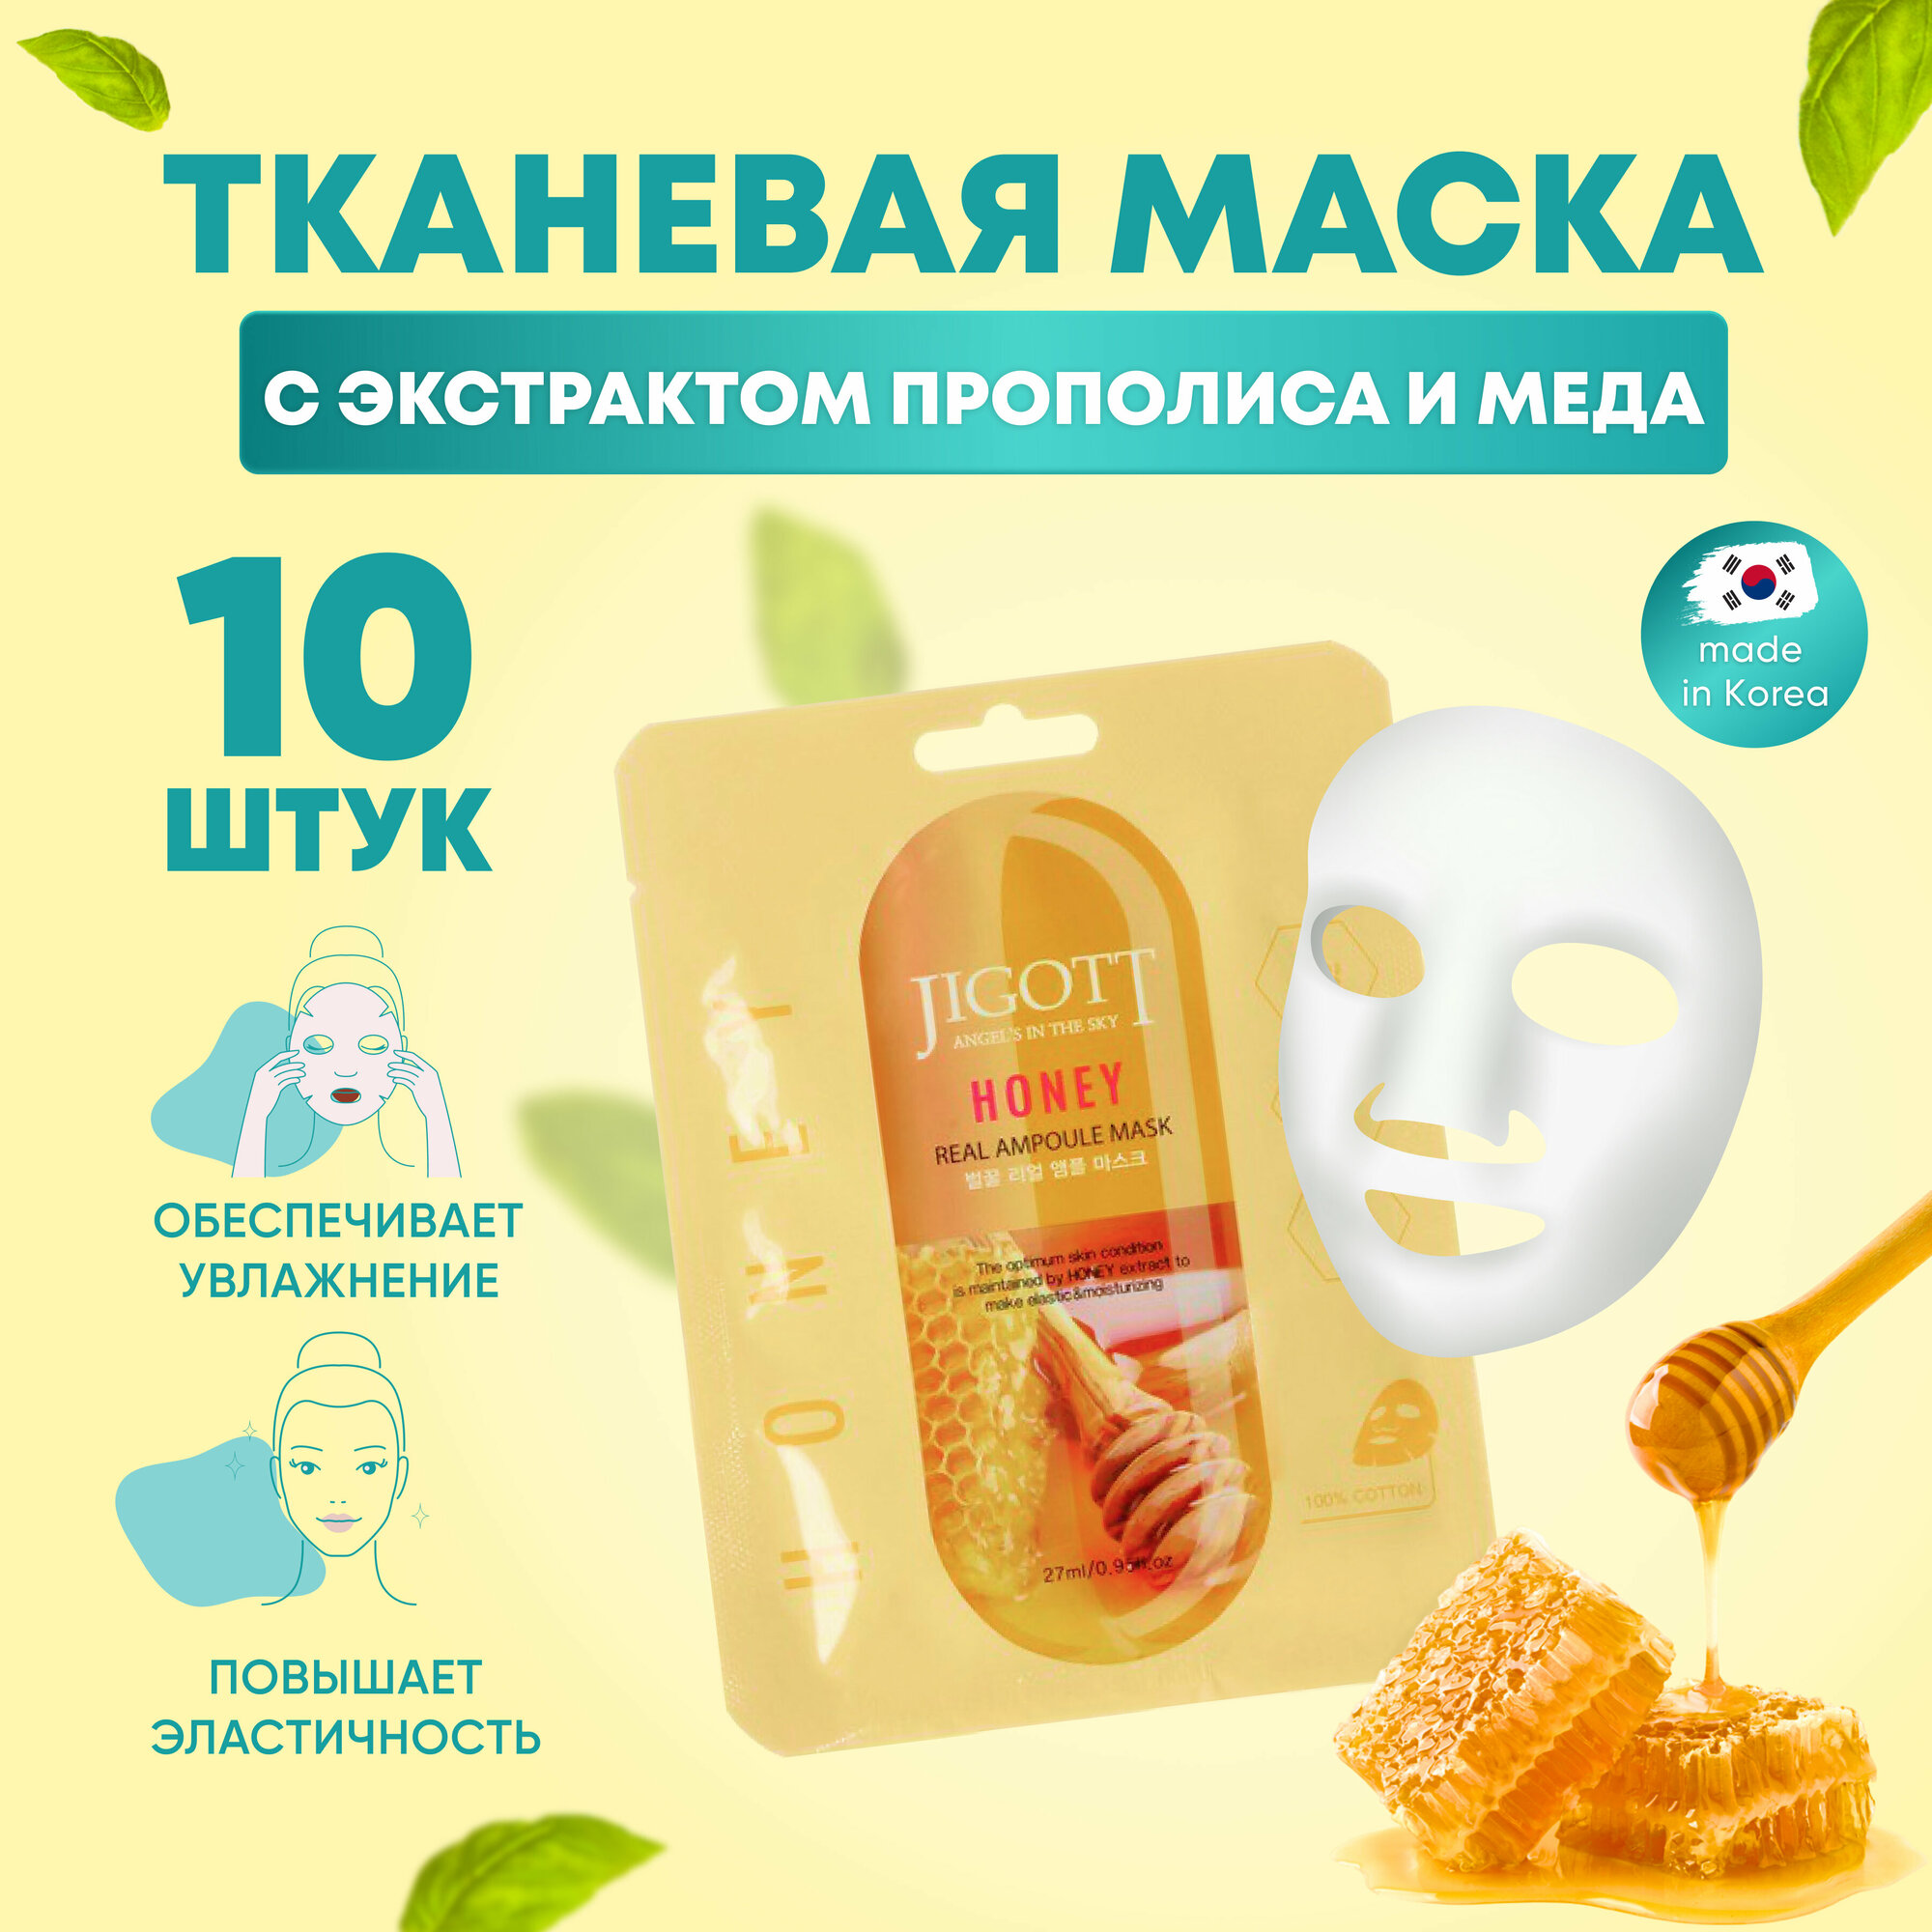 Jigott Маски для лица тканевые, набор 10 шт с экстрактом прополиса и меда, Корея